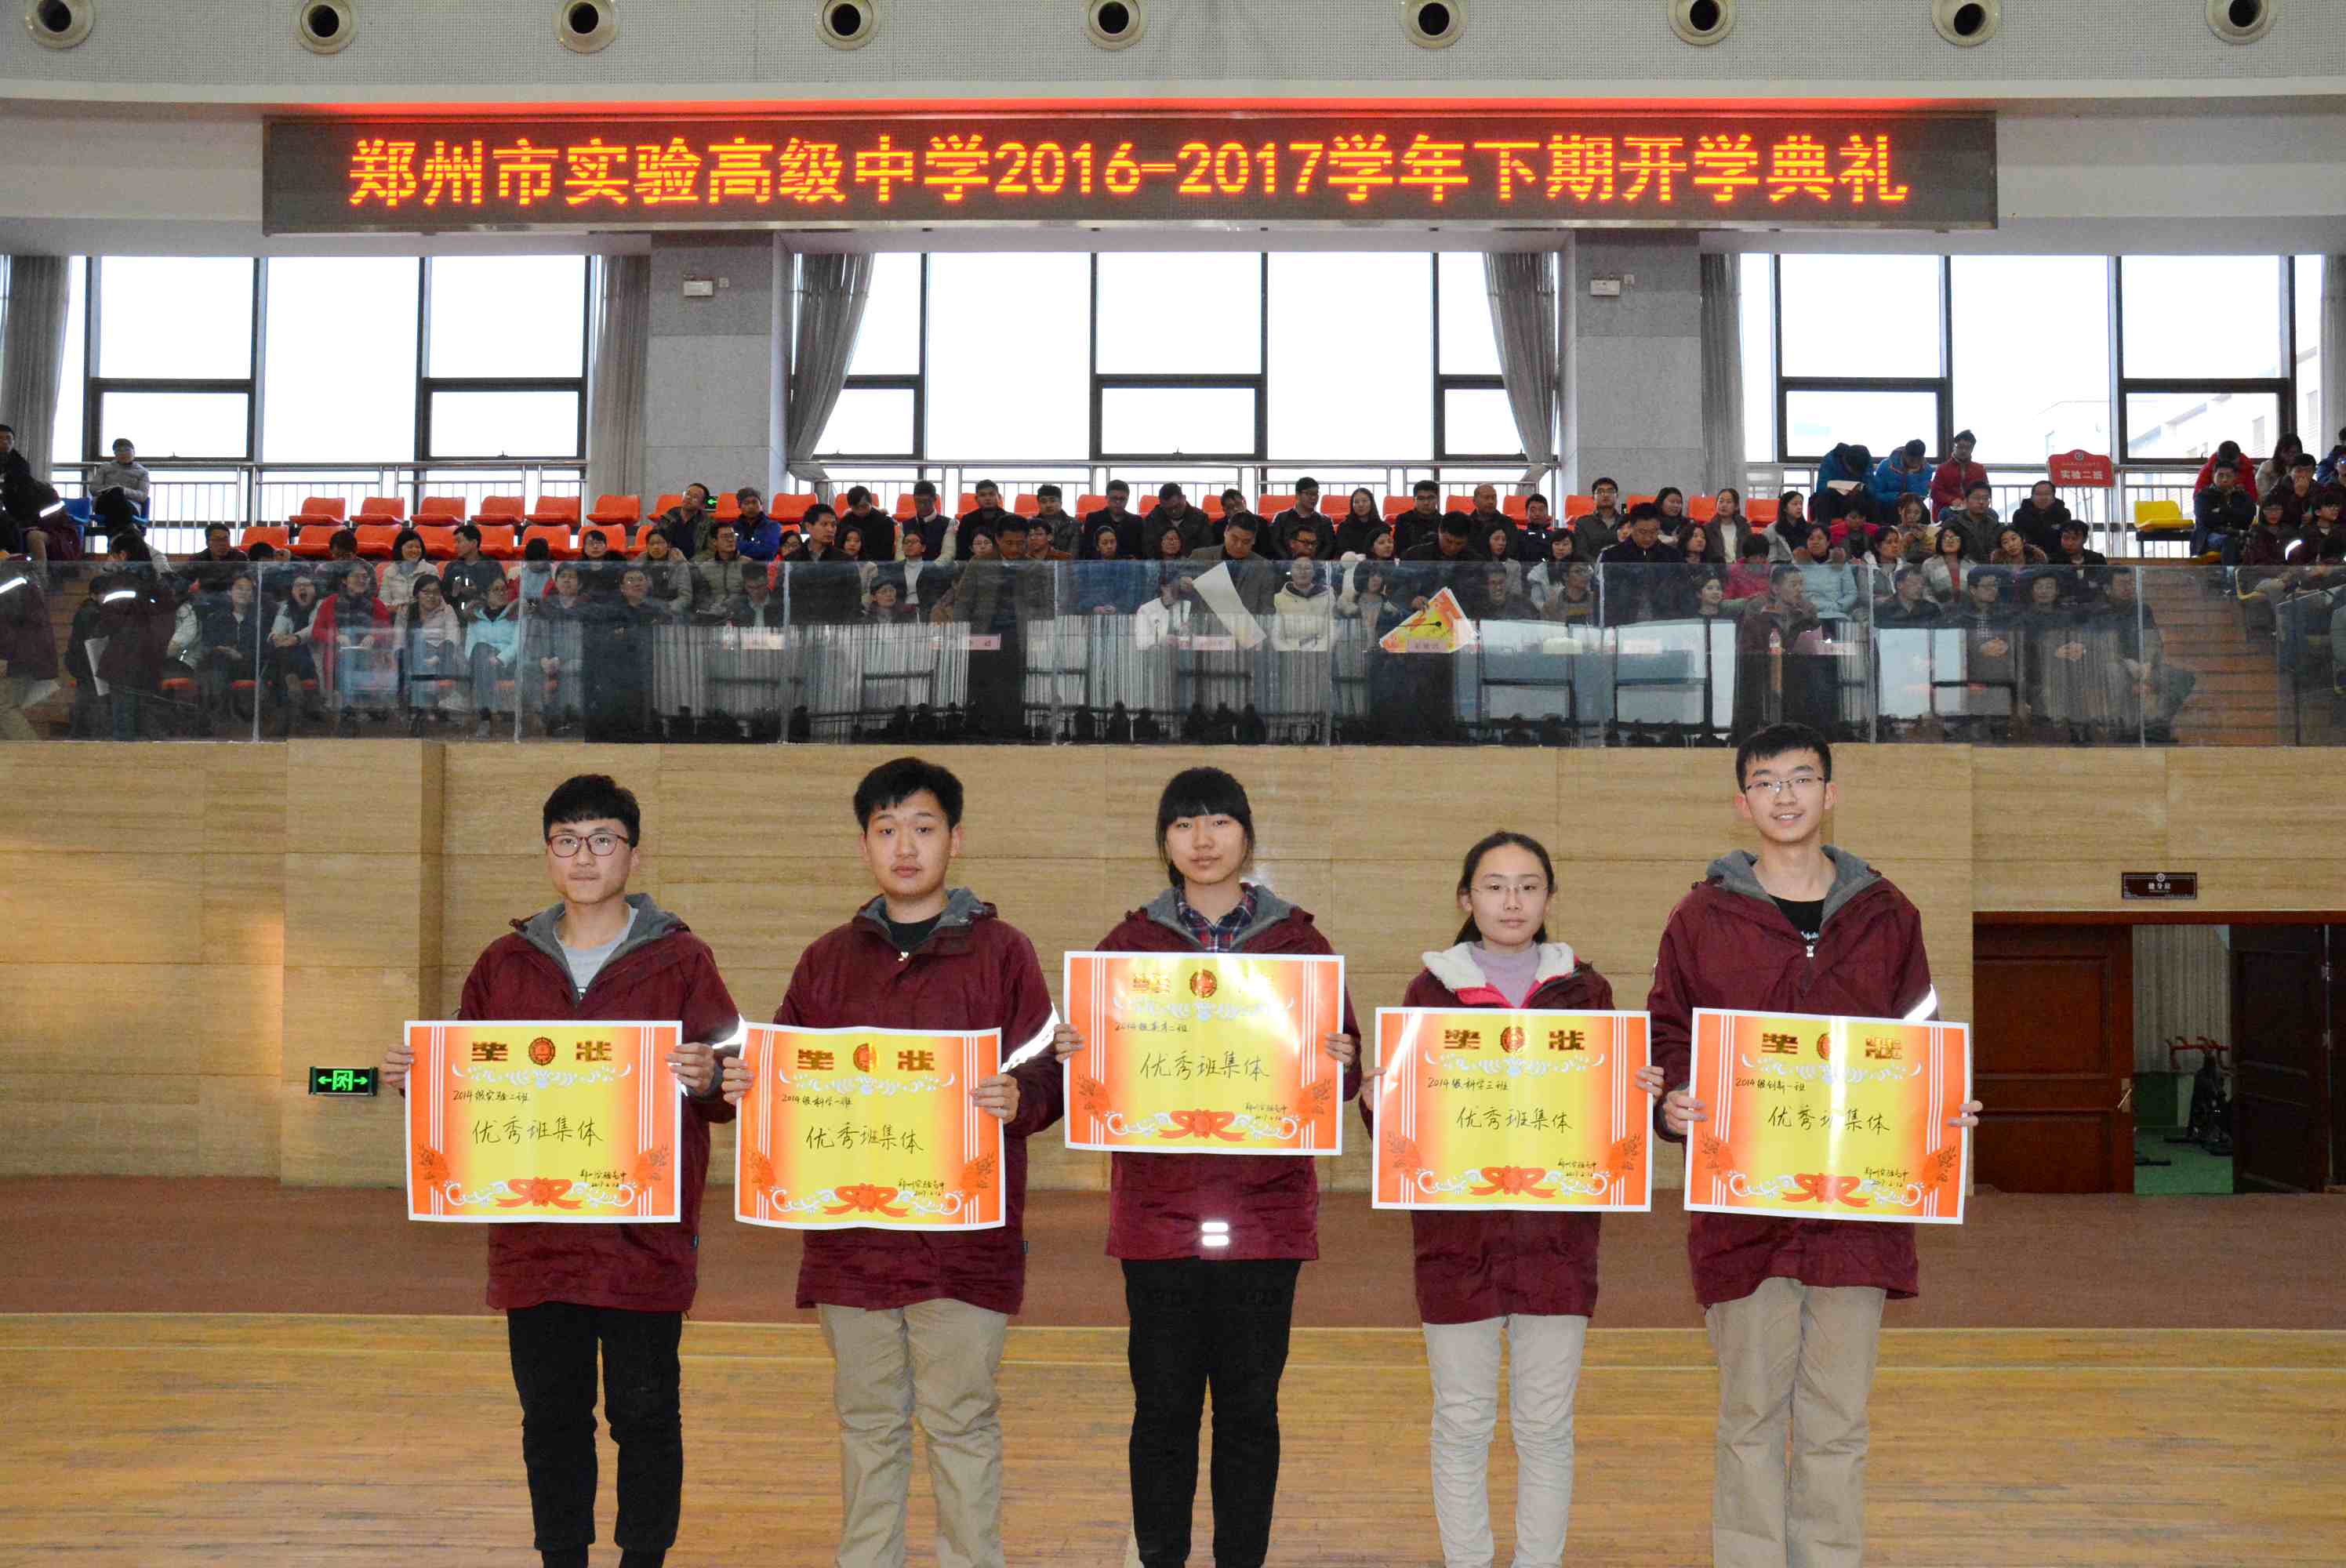 郑州市实验高级中学--2017,撸起袖子加油干!——郑州